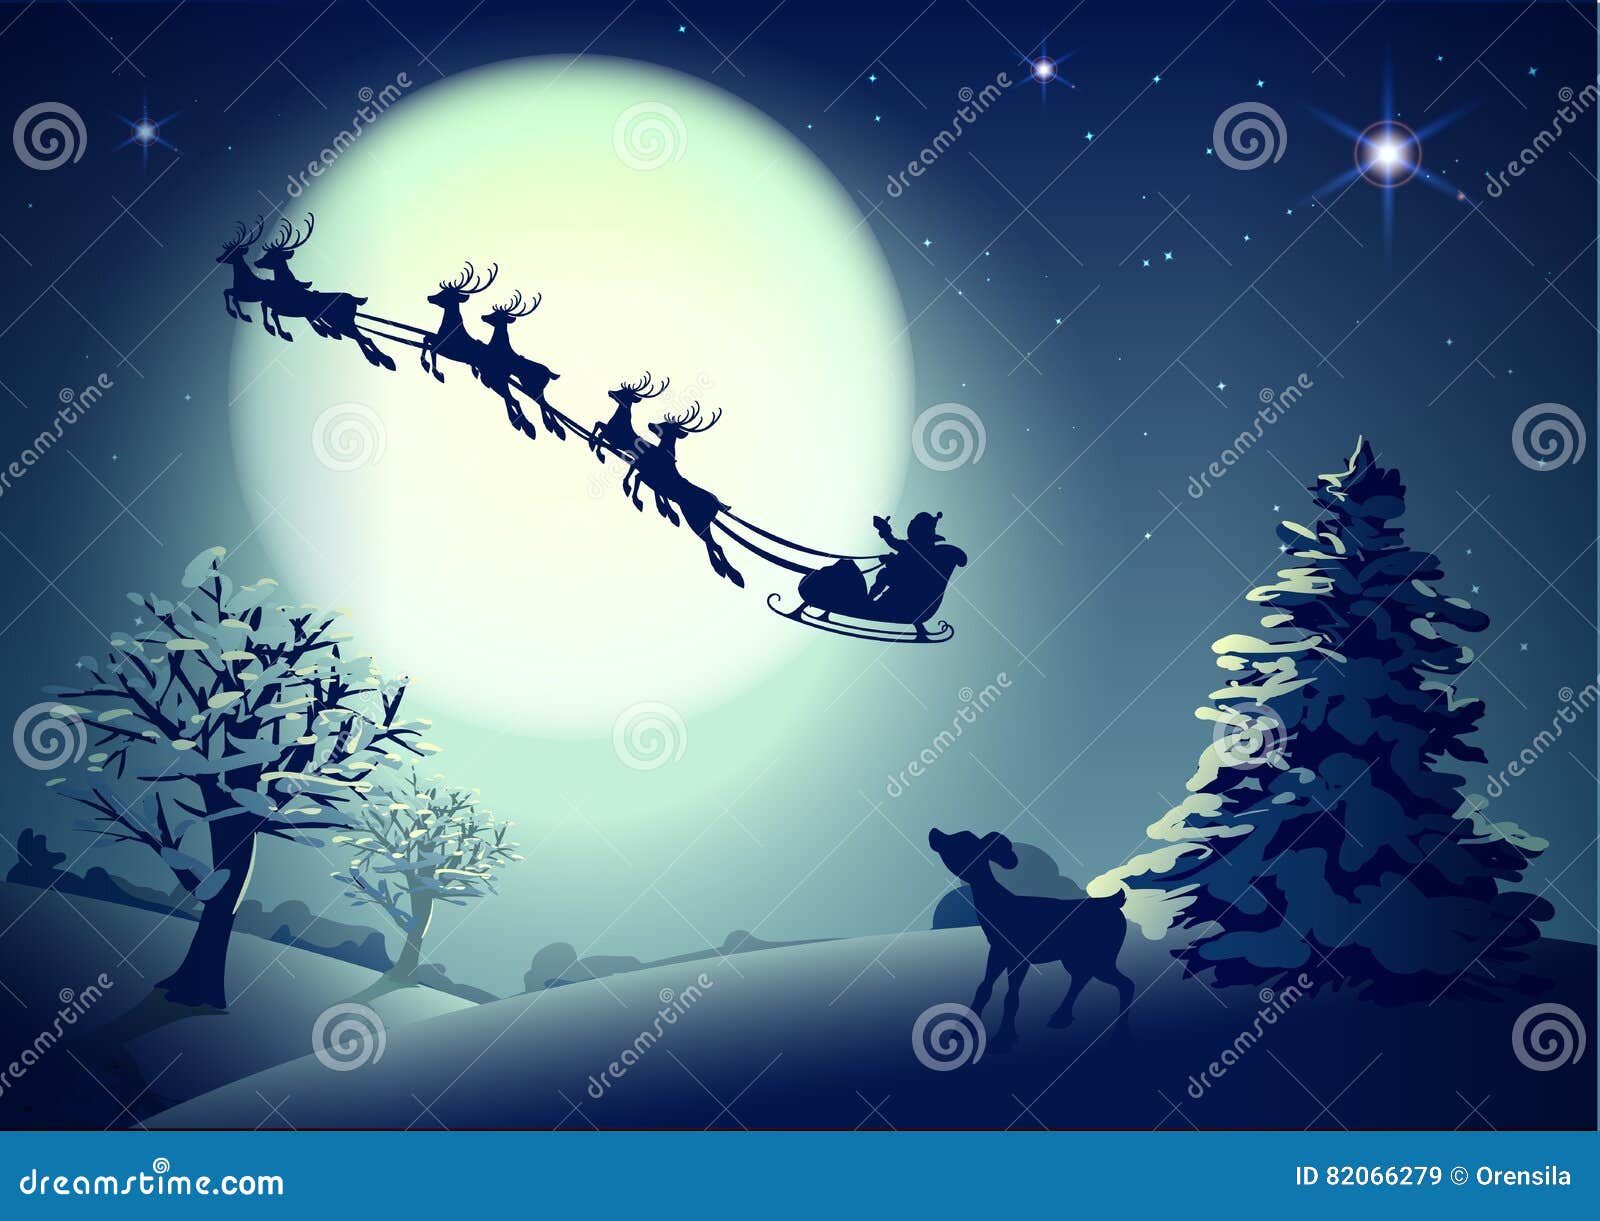 Ông già Noel cũng là một biểu tượng vô cùng đặc biệt trong mùa lễ Giáng Sinh này. Với bộ trang phục đỏ tuyệt đẹp và túi đồ đầy quà tặng, ông ấy cam kết mang đến niềm vui cho trẻ em trên khắp thế giới. Hình ảnh về ông già Noel chắc chắn sẽ khiến bạn nhớ về tuổi thơ và tận hưởng không khí ấm áp của mùa lễ Giáng Sinh.